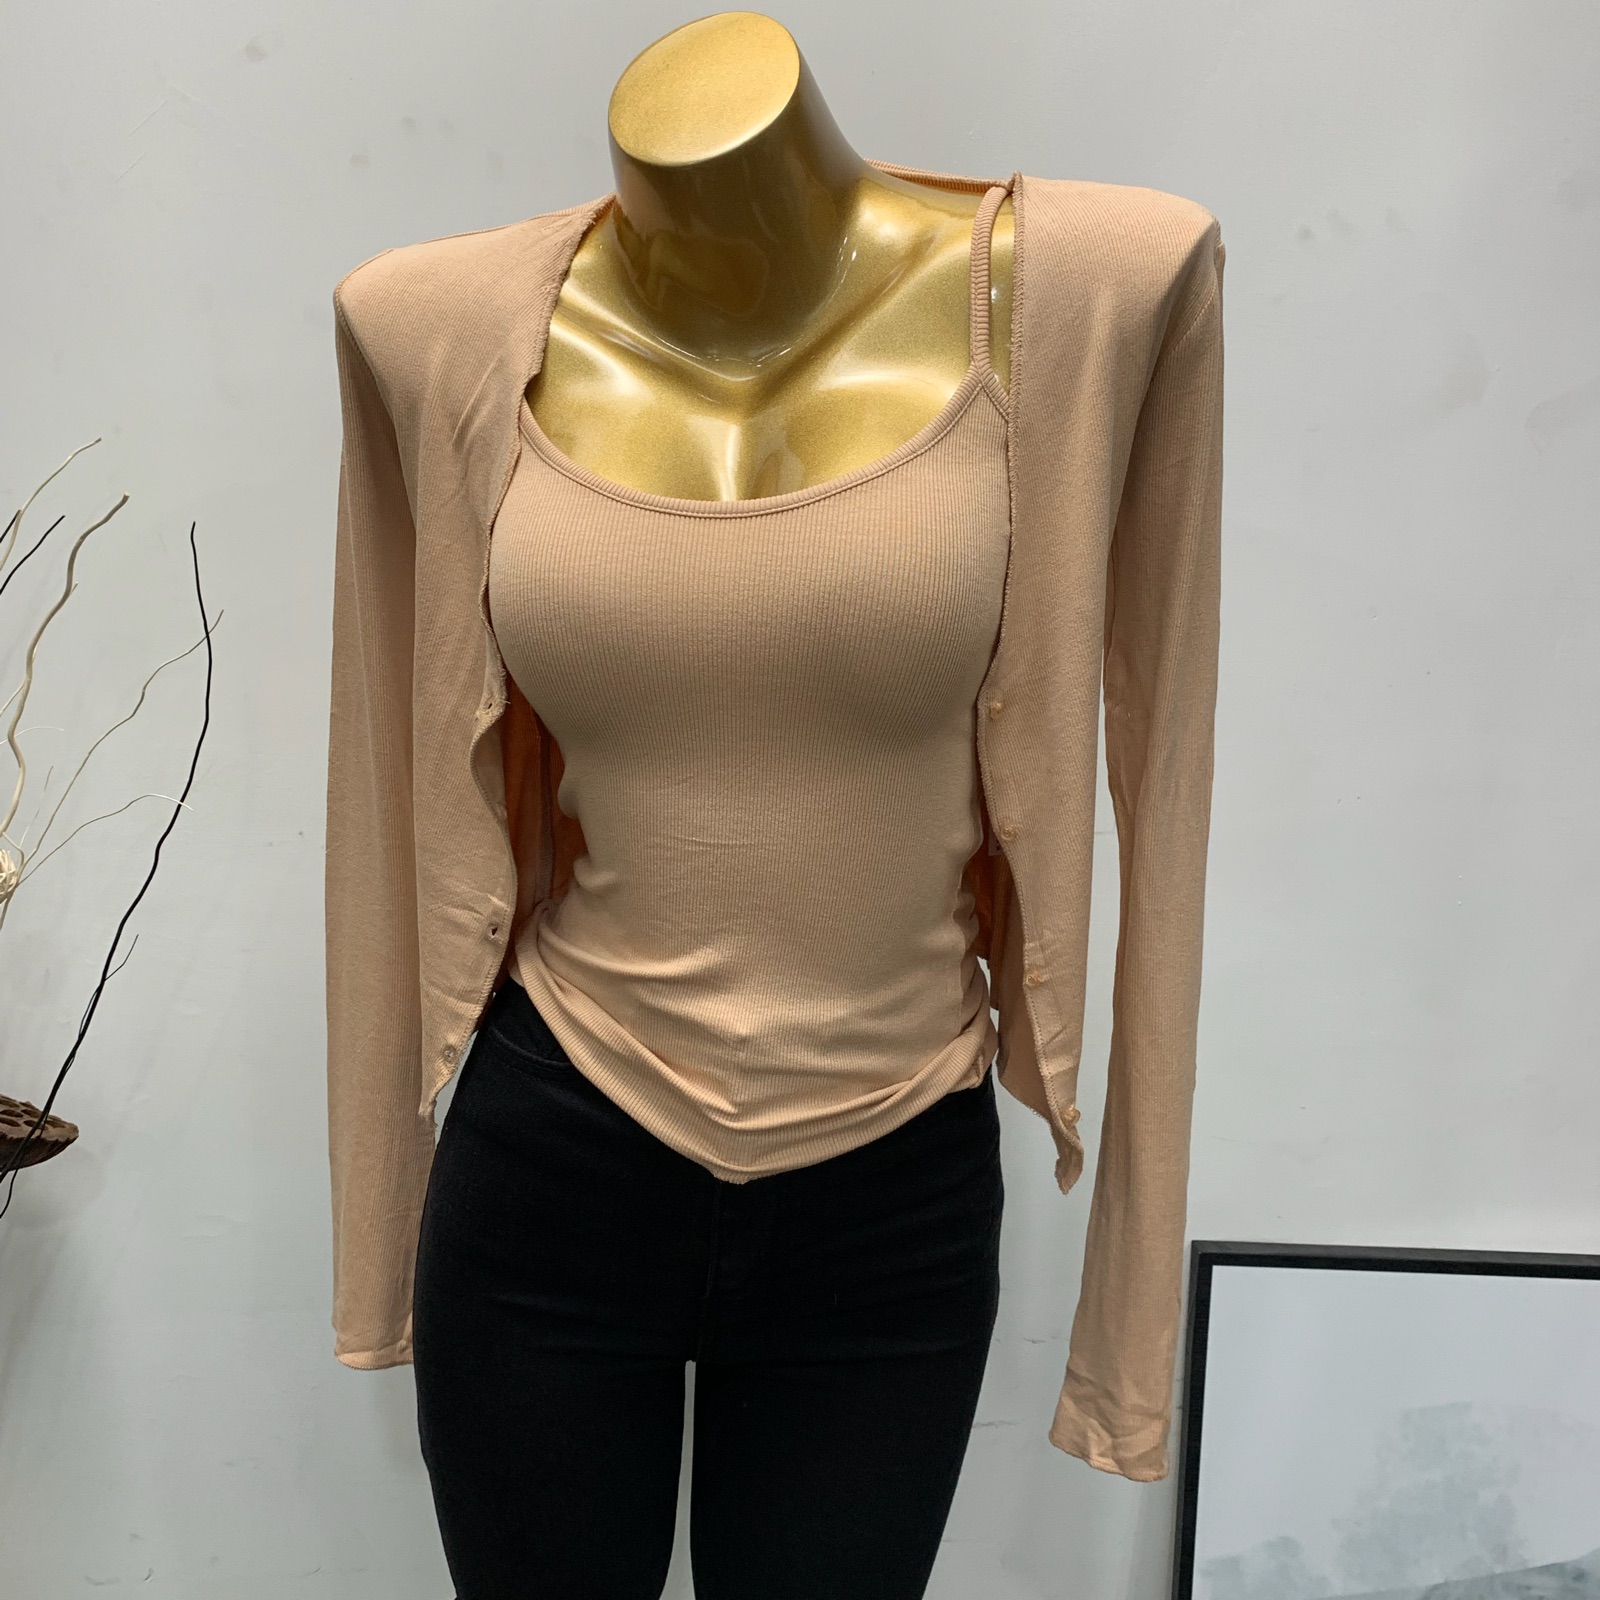 现货韩国东大门女装2020春装新款甜美洋气修身吊带背心T恤两件套